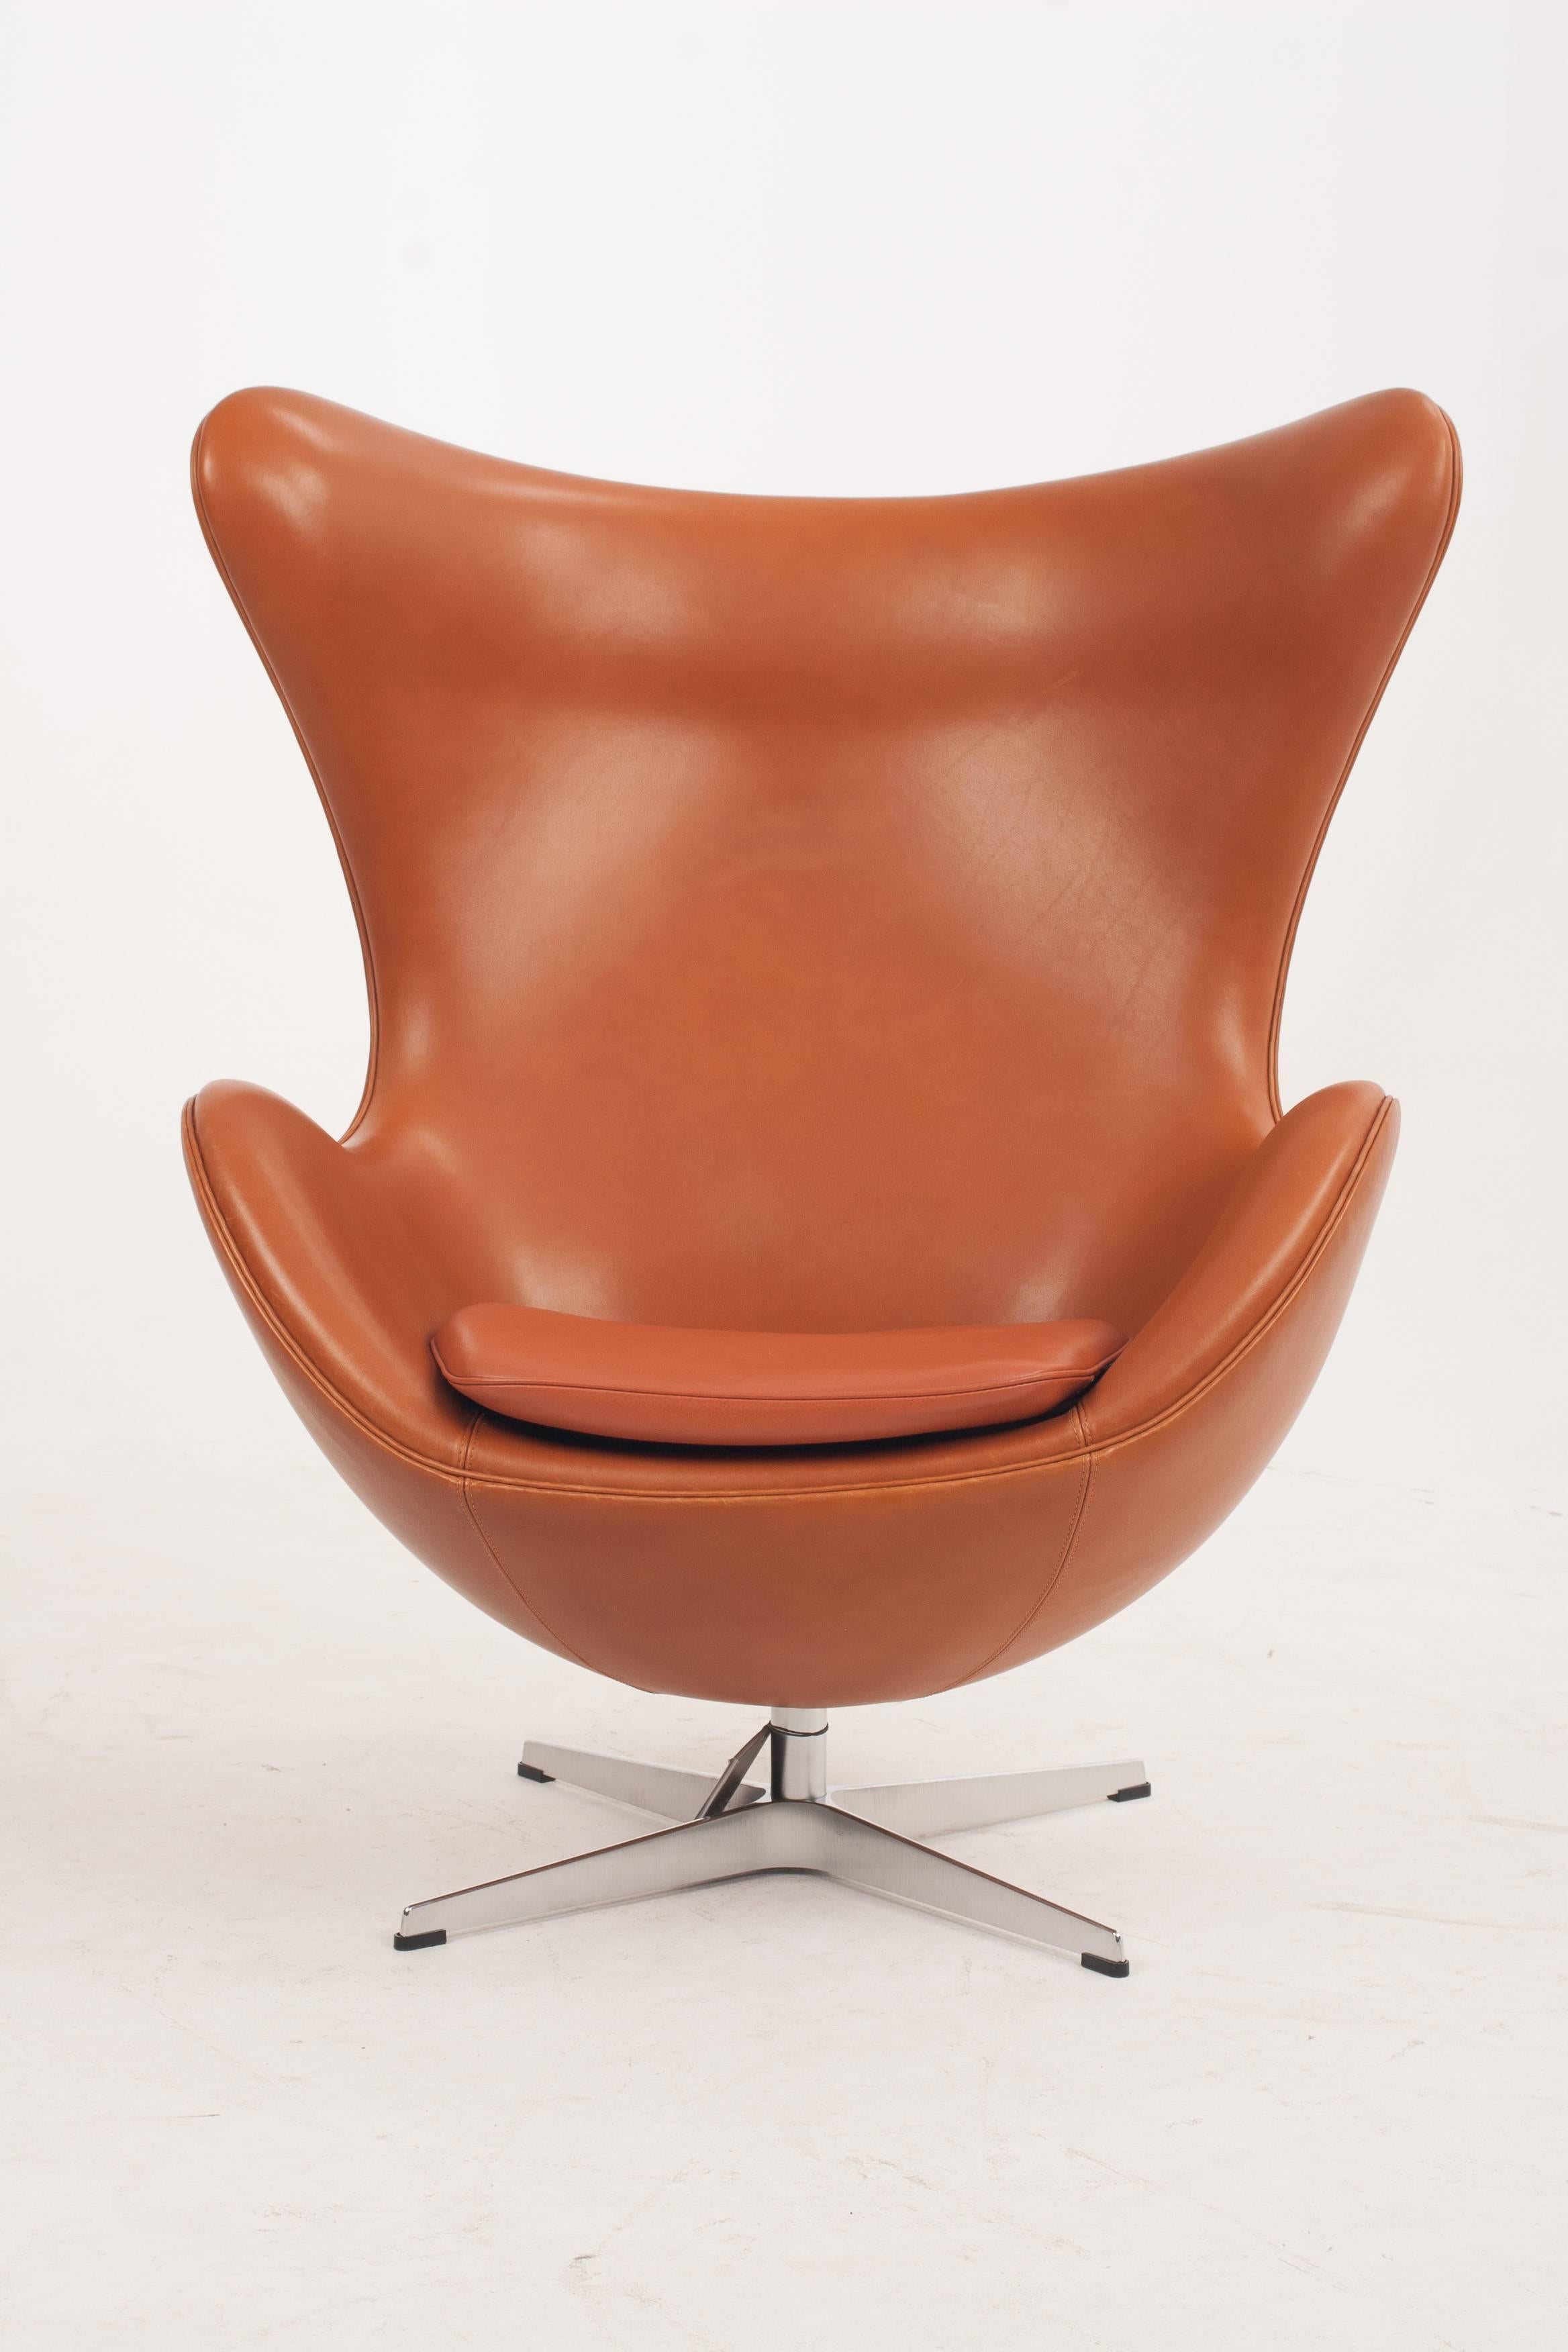 Mid-Century Modern Arne Jacobsen Egg Chair in Walnut Elegance Soft Leather for Fritz Hansen